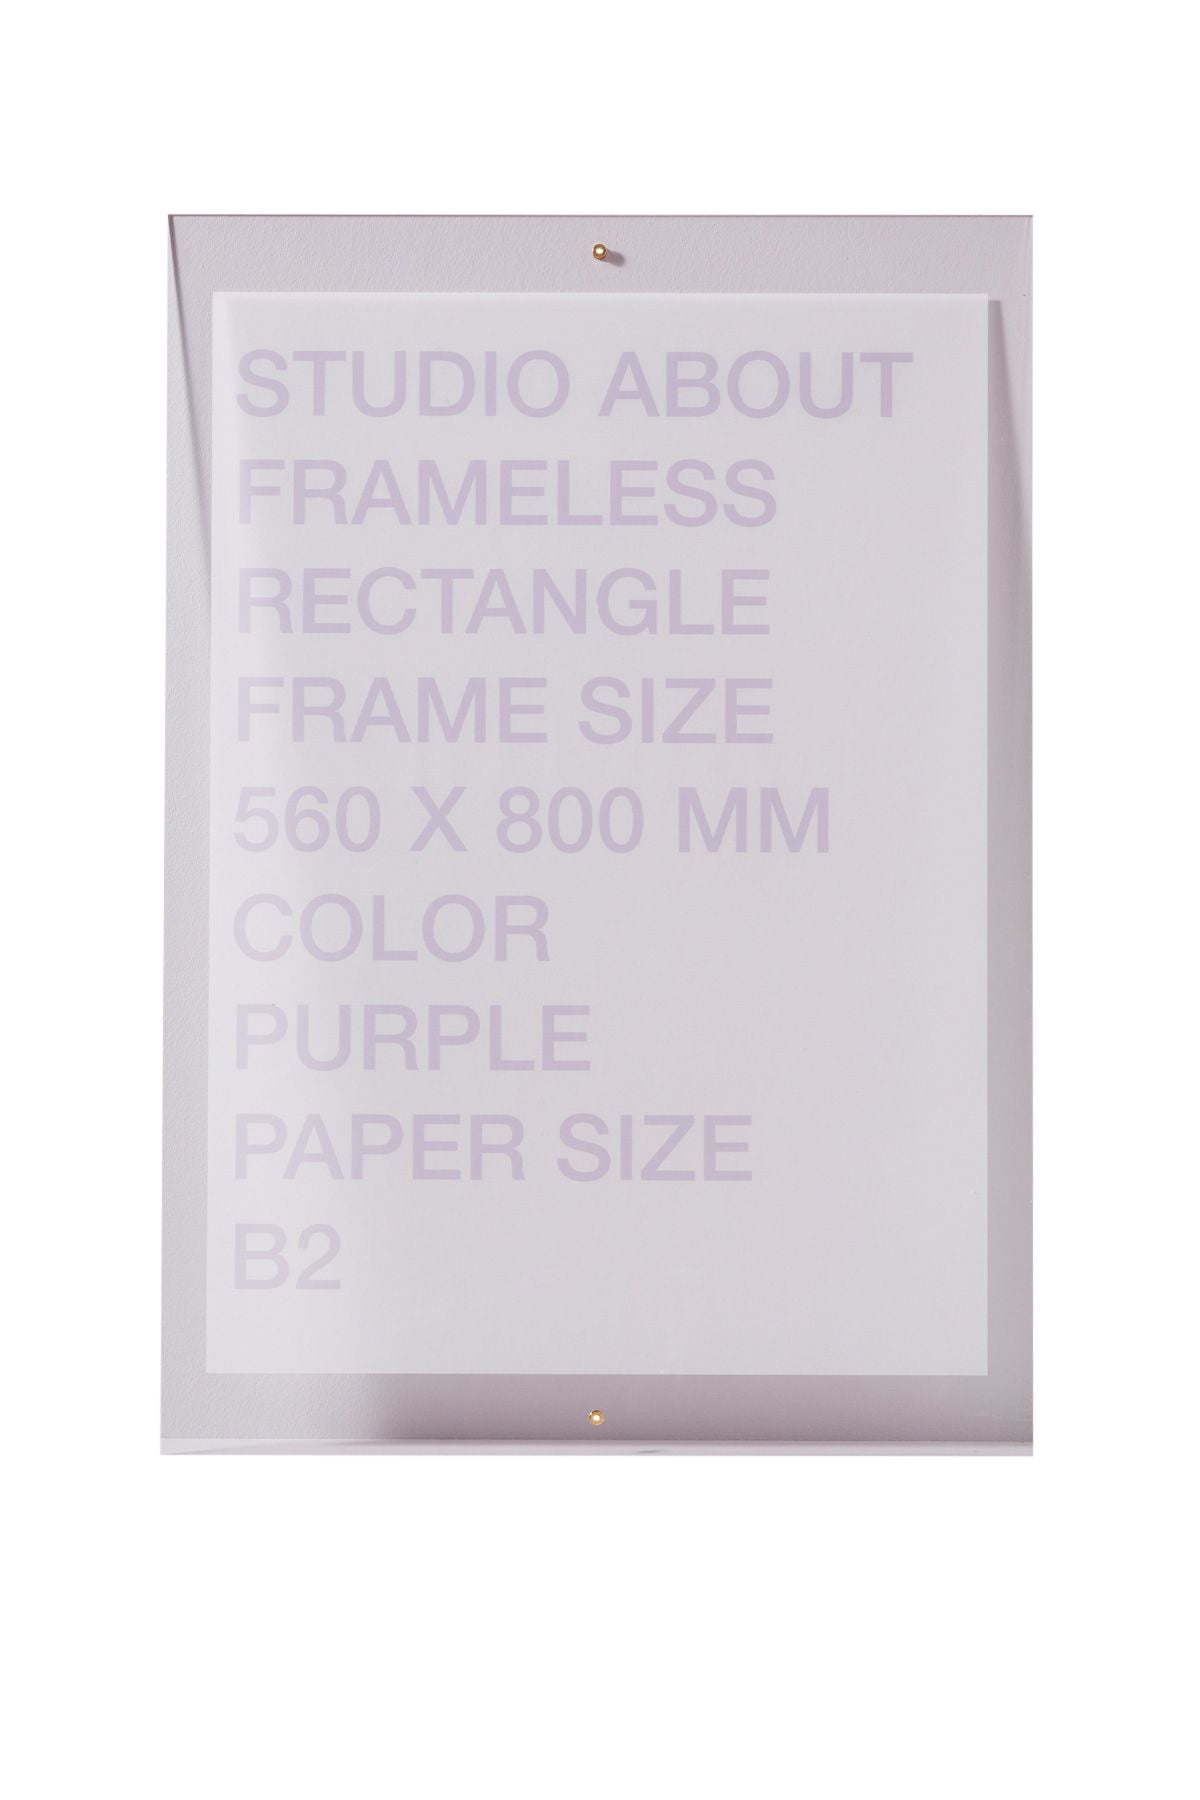 Estudio sobre el marco sin marco B2 rectángulo, púrpura